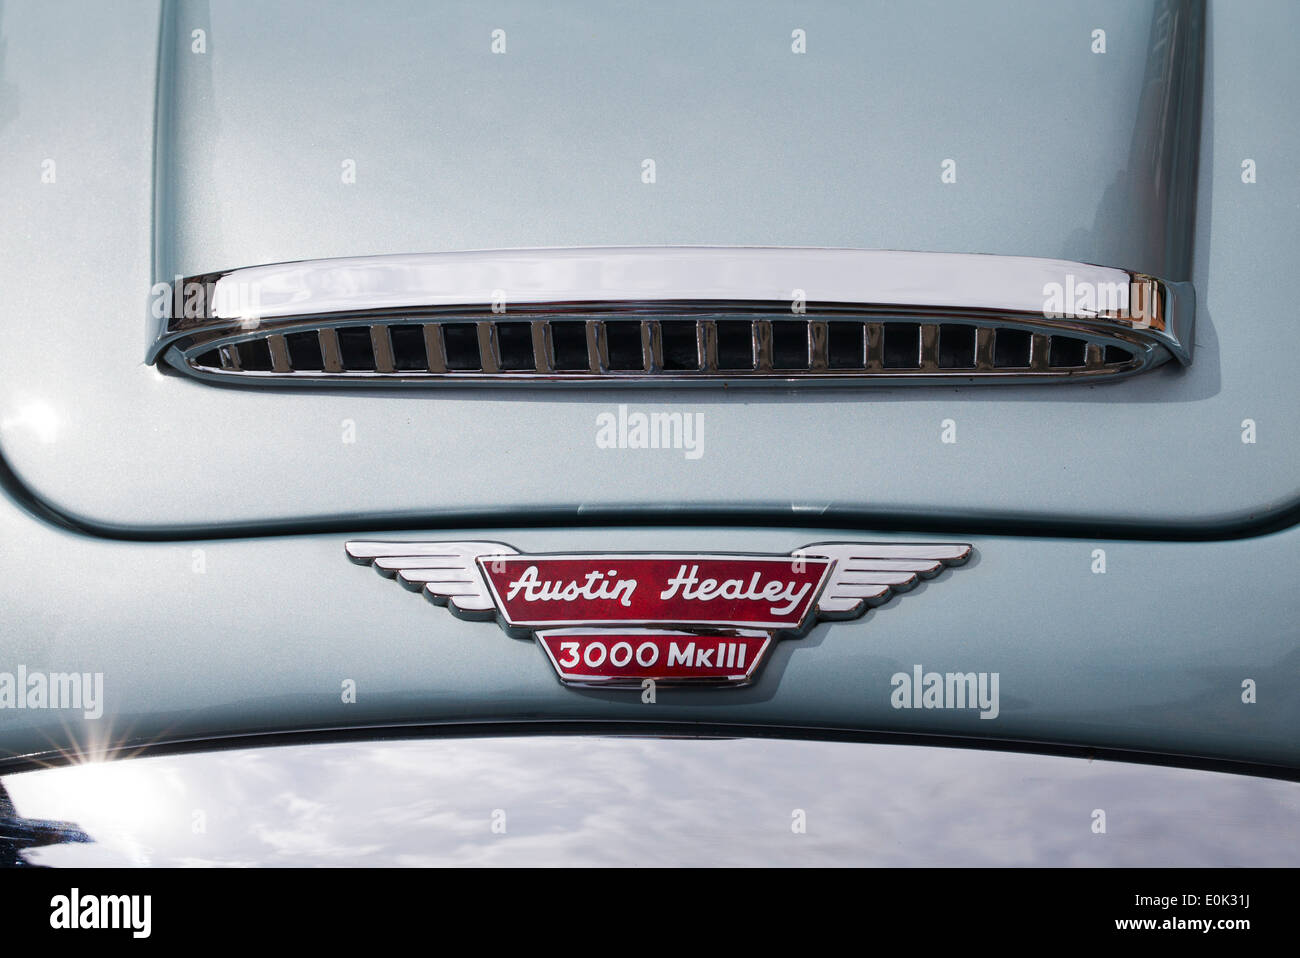 Austin Healey 3000MK111 British sports car badge e la griglia radiatore Foto Stock